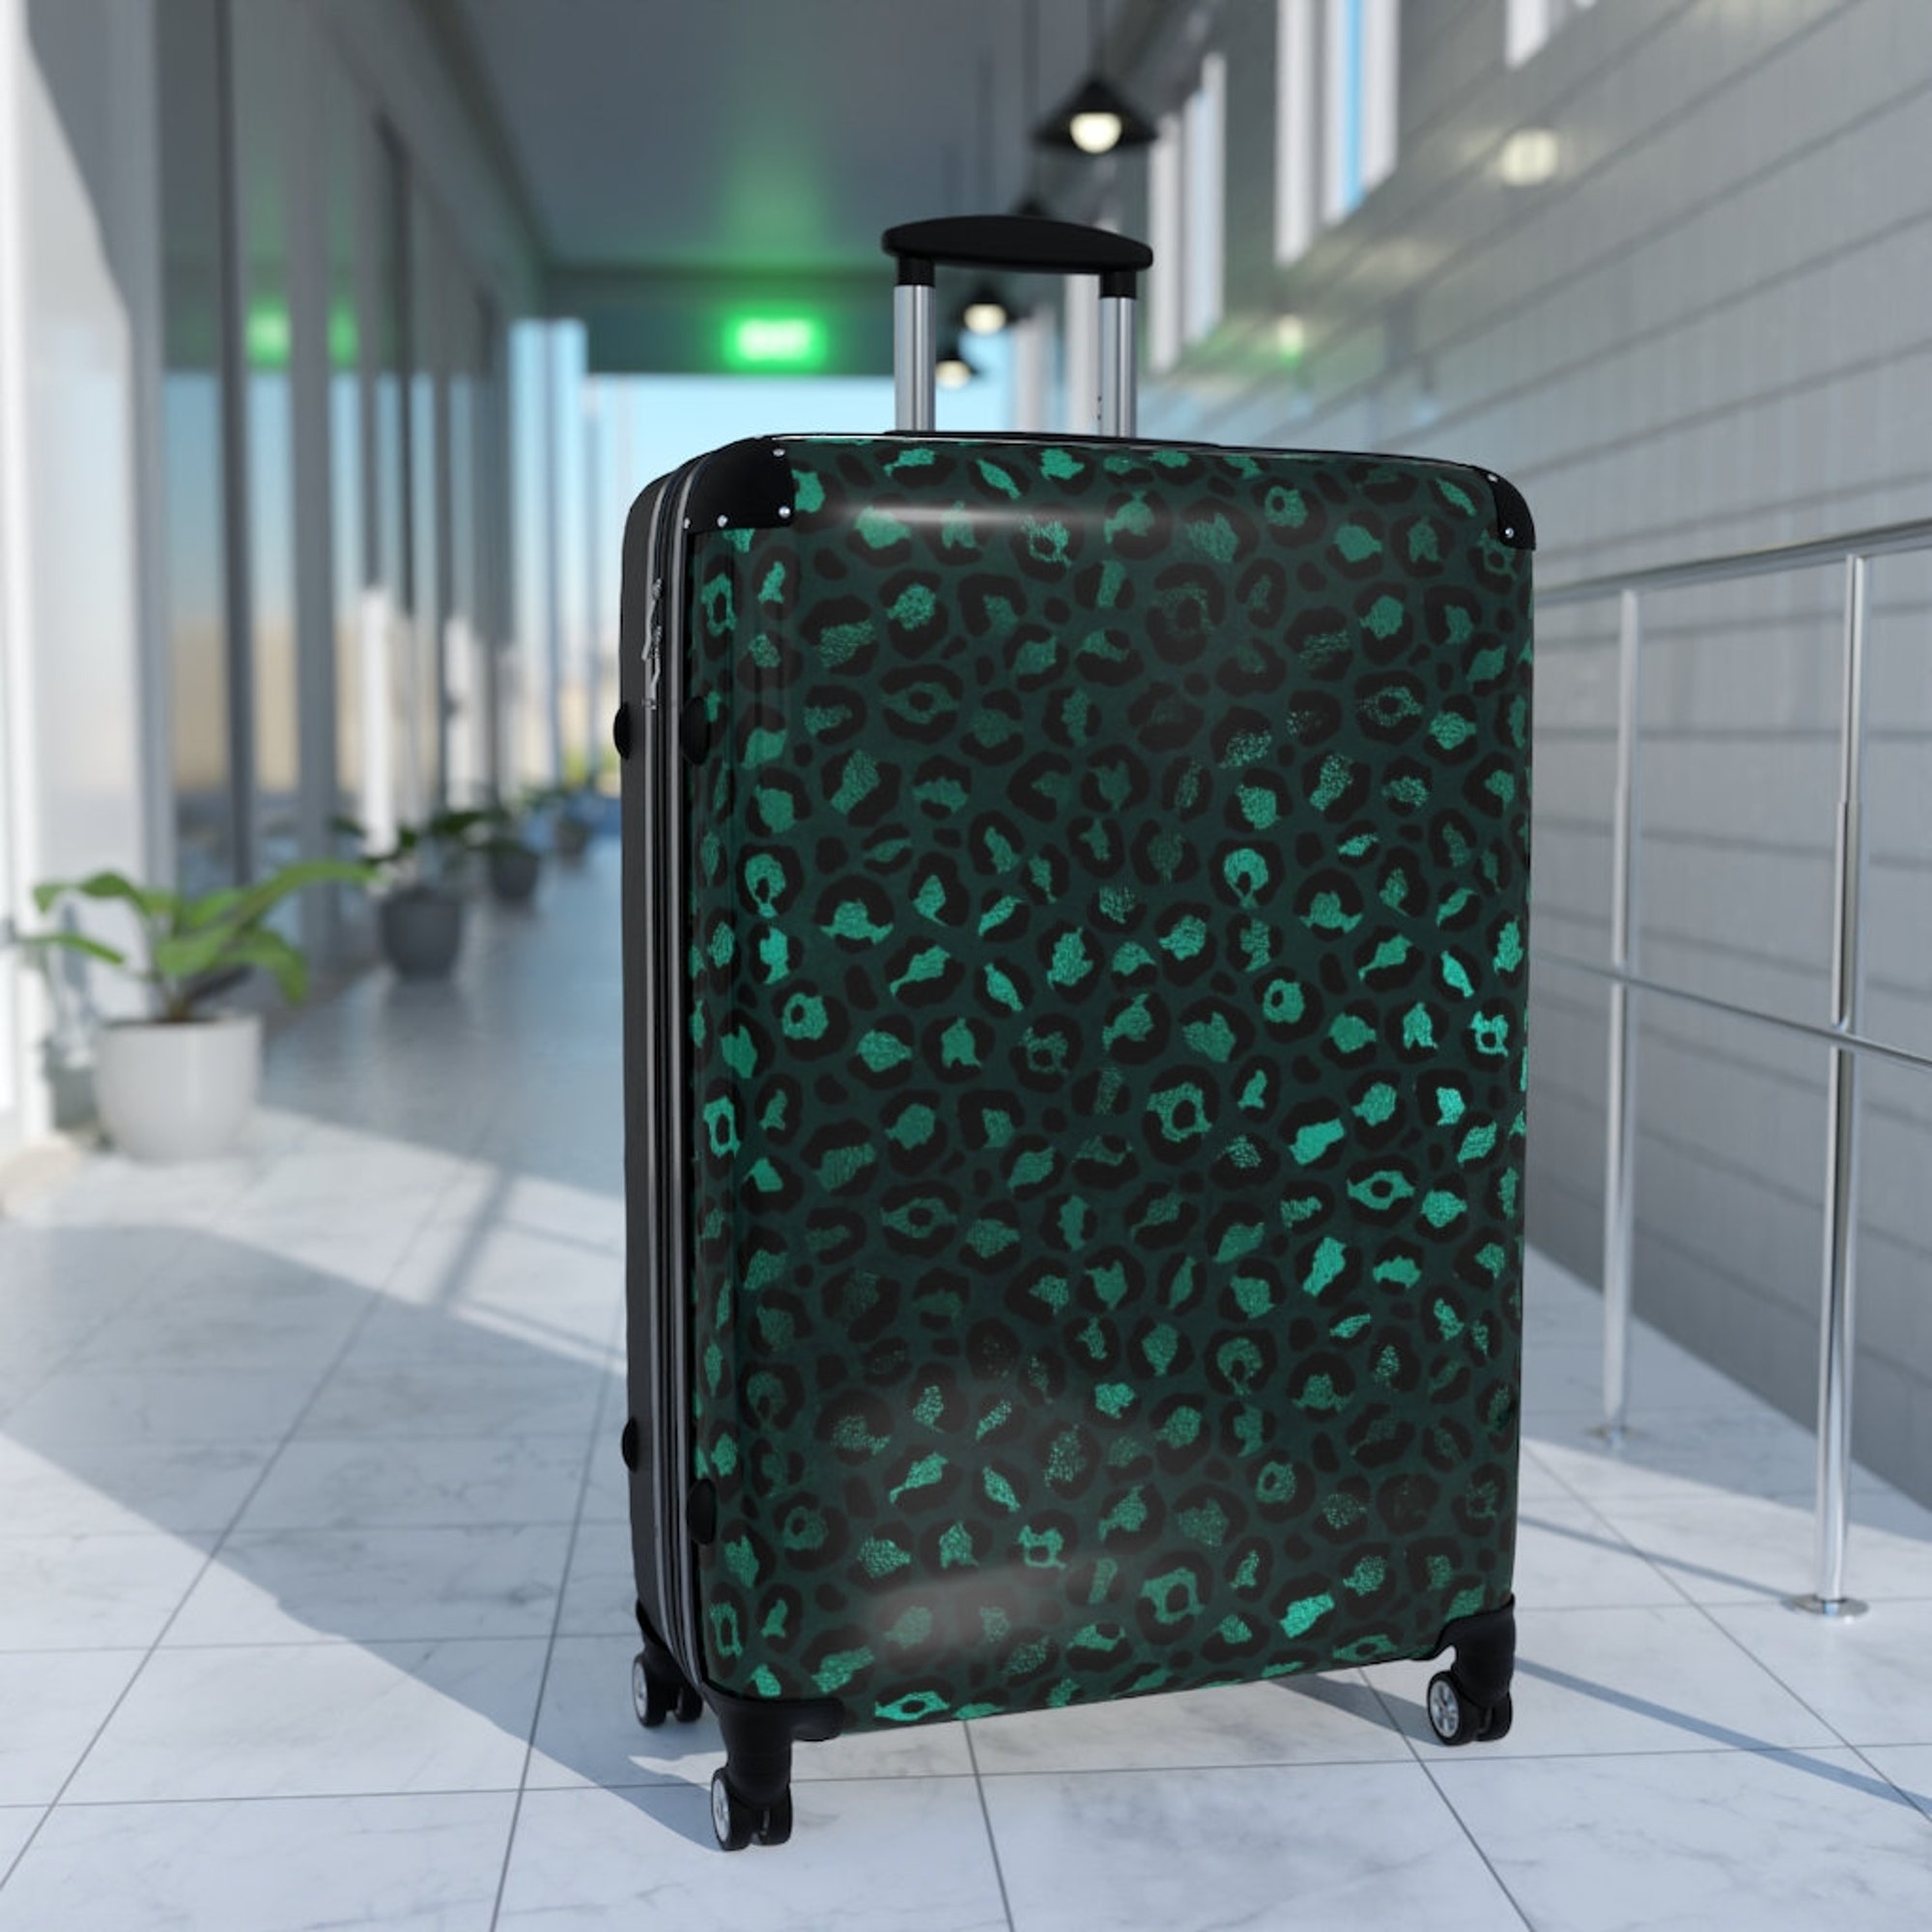 The Deep Jungle Suitcase